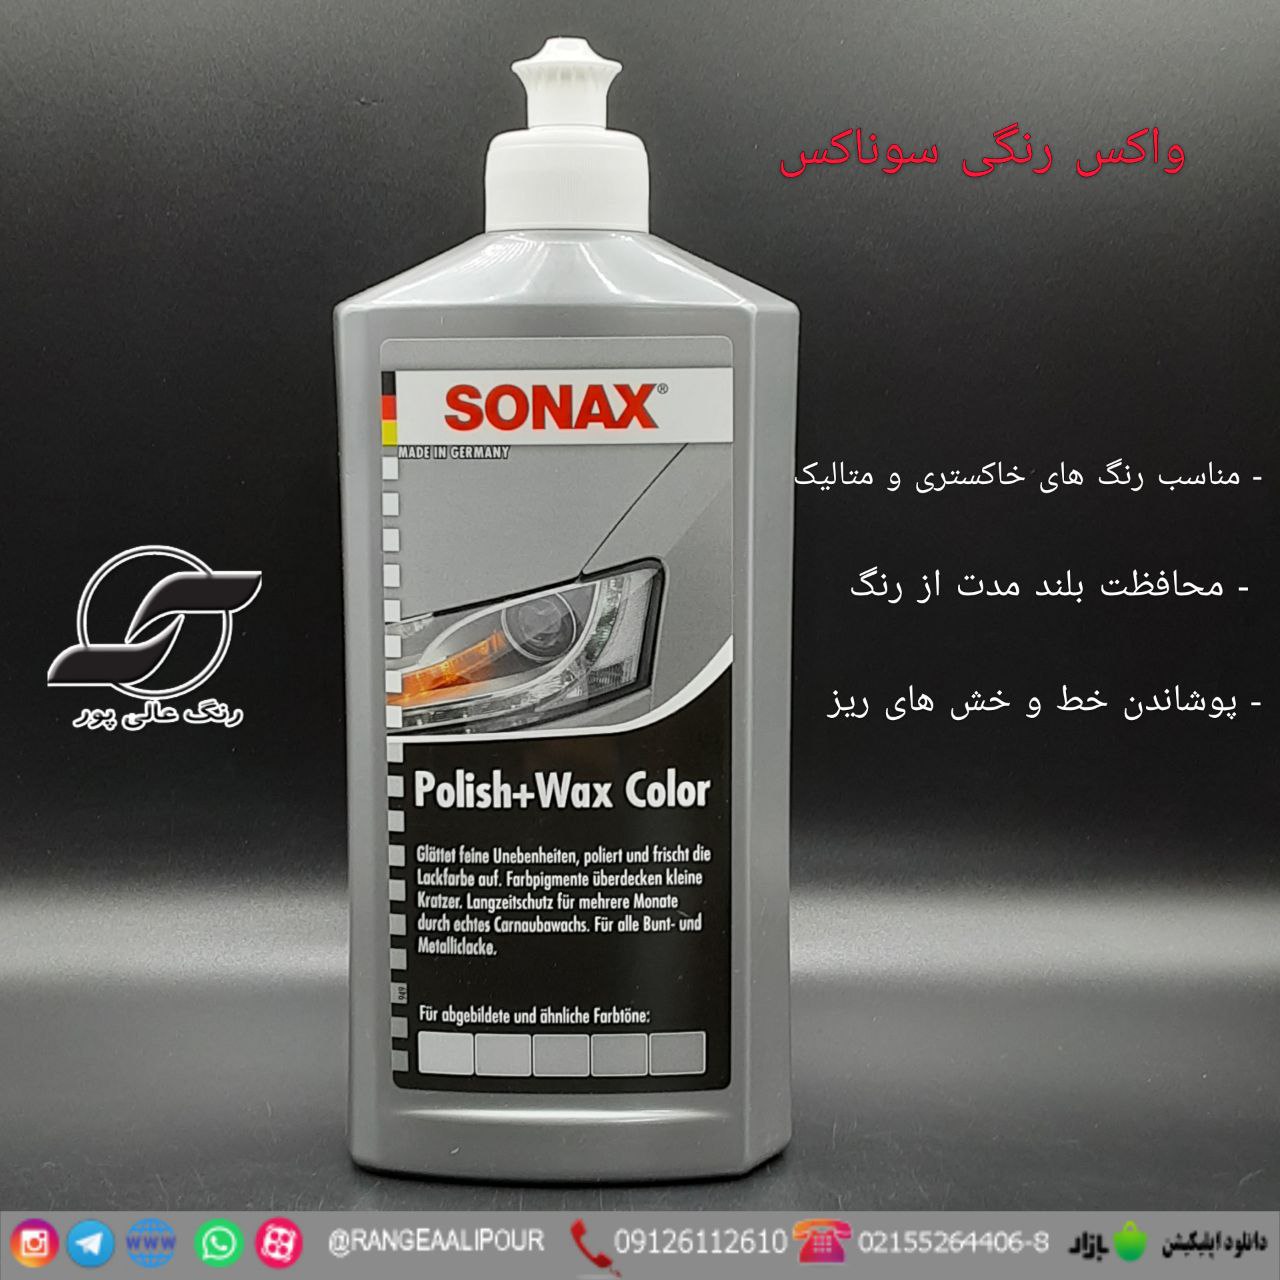 SONAX Polish & Wax Color